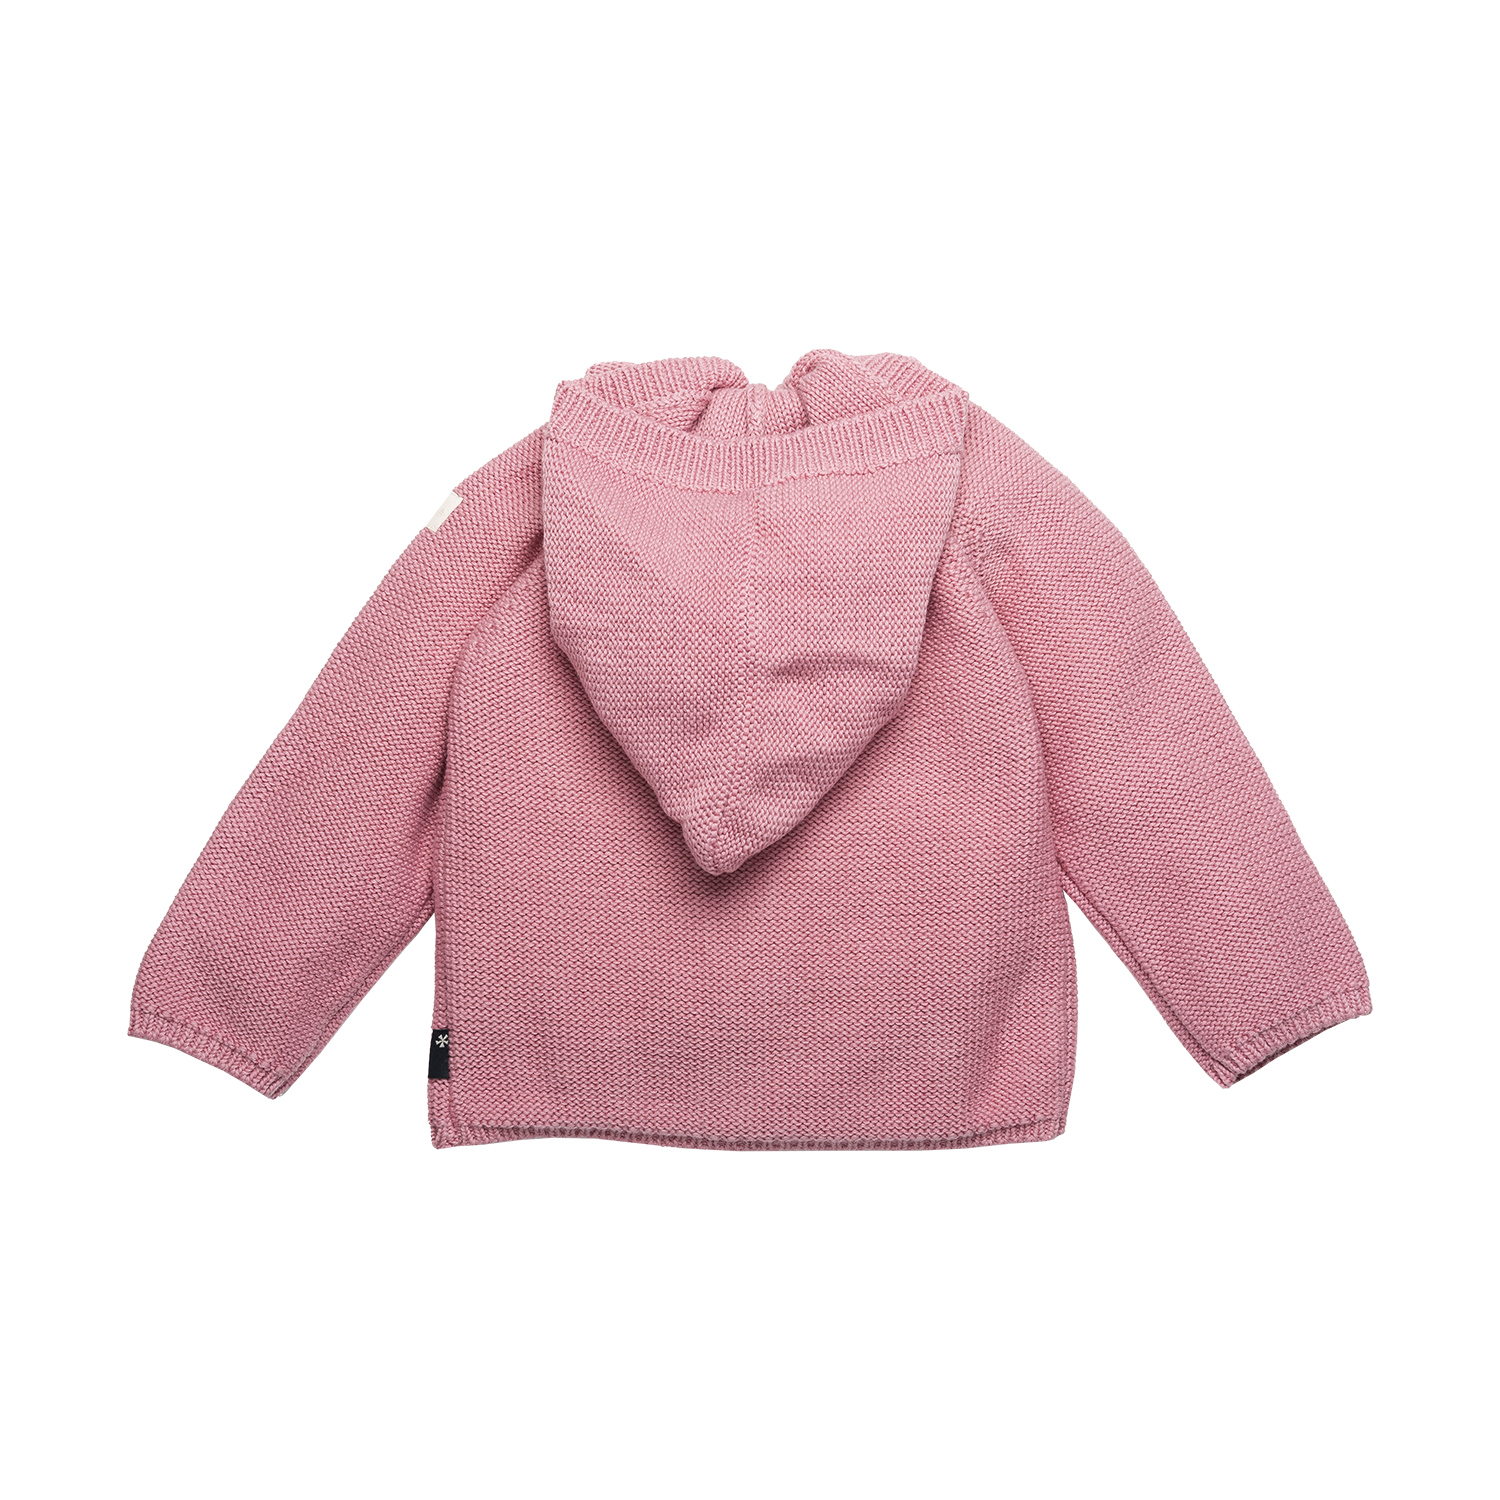 Meisjes Cardigan Knit van B.E.S.S. in de kleur Pink in maat 68.